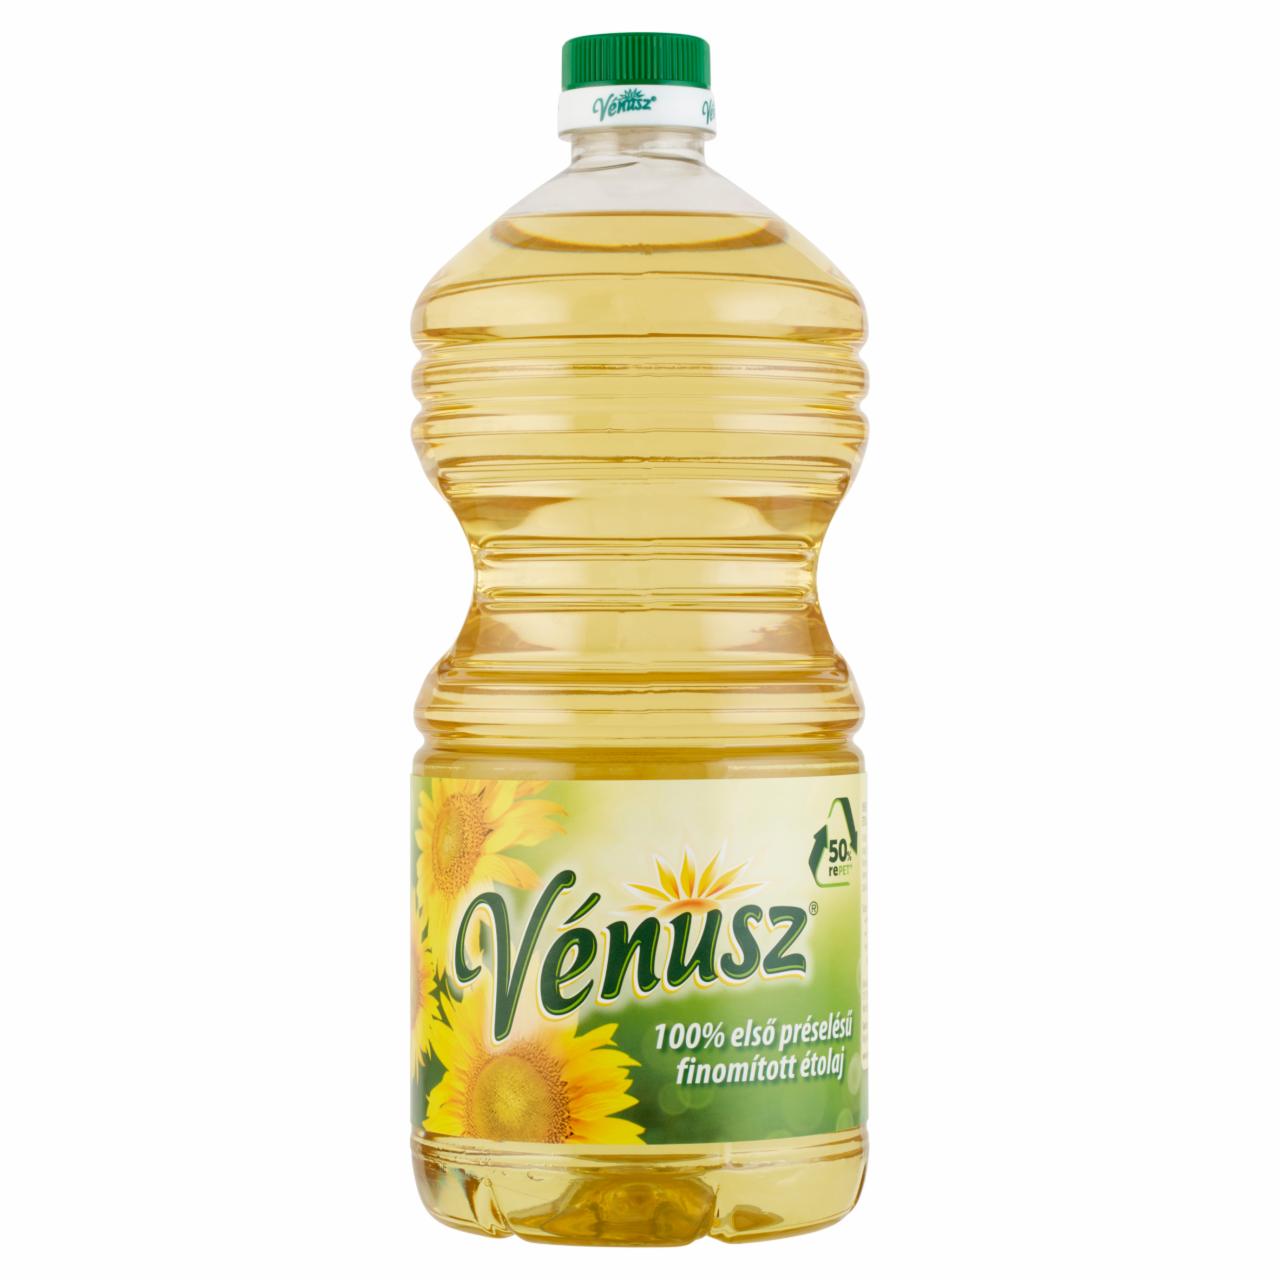 Képek - Vénusz 100% első préselésű, finomított napraforgó-étolaj 2 l